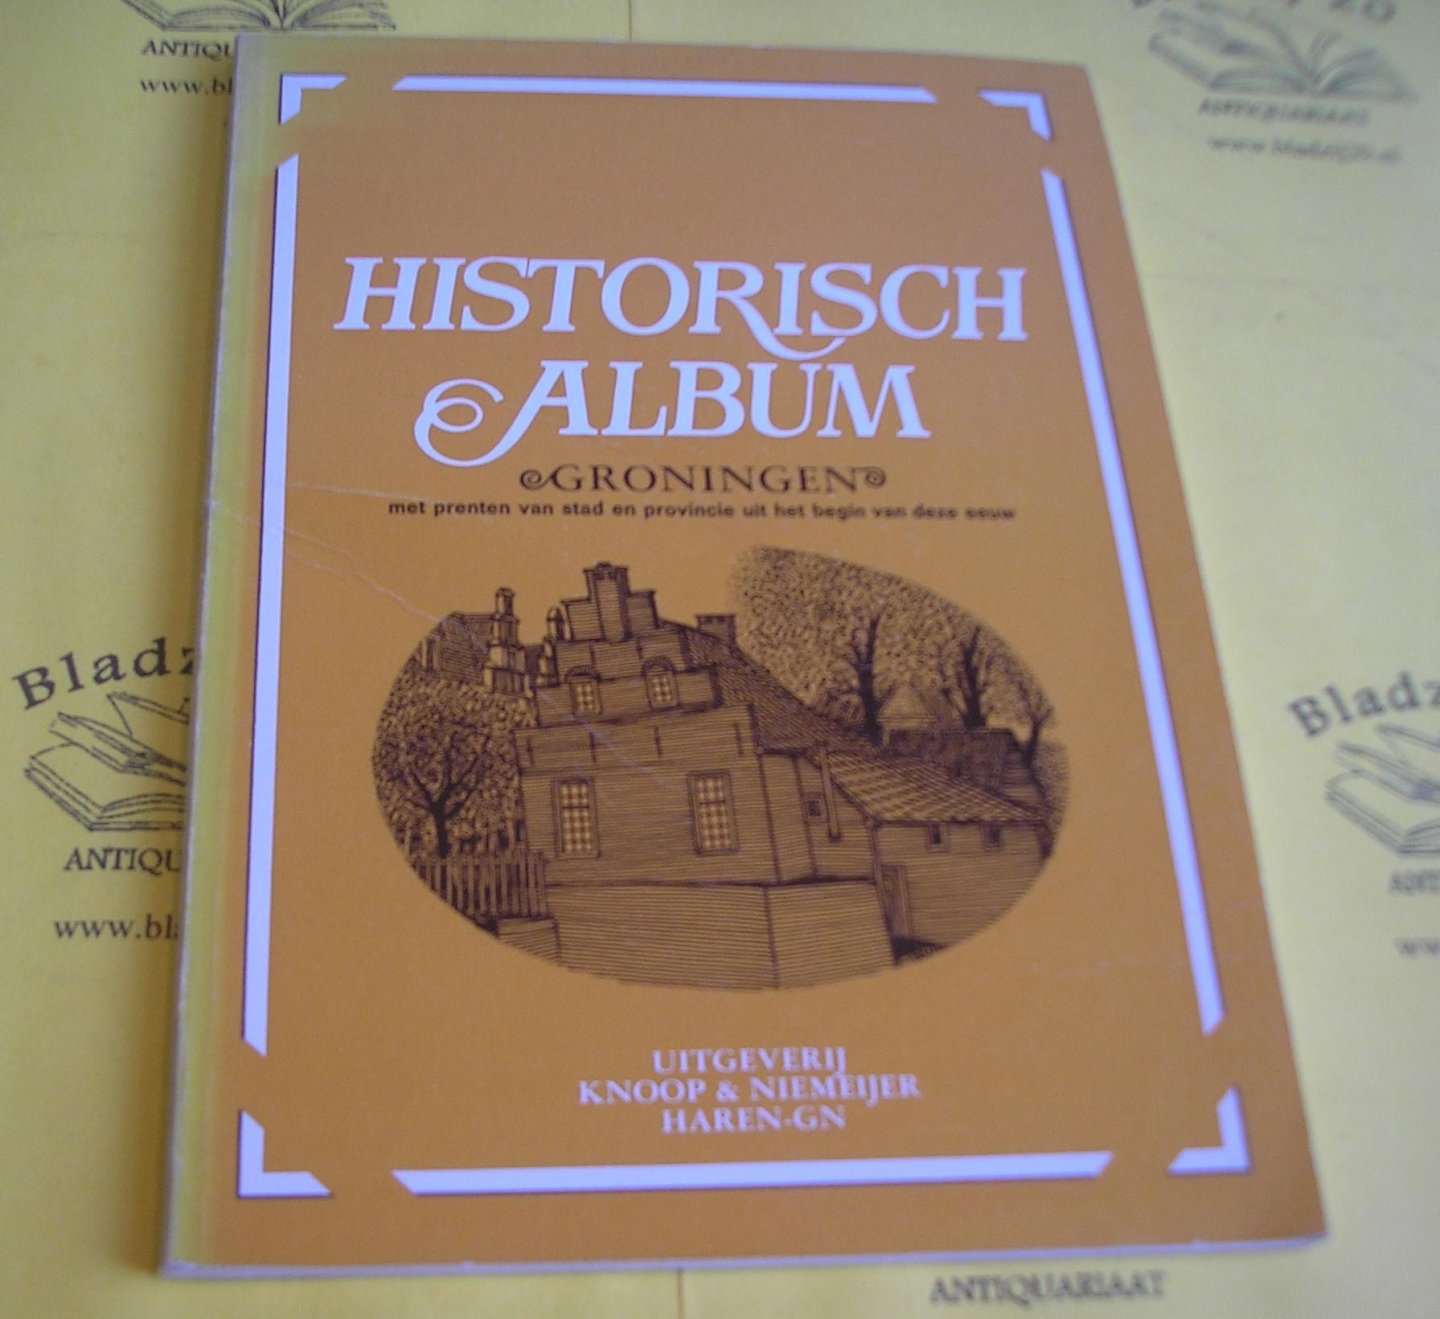 Groningen. - Historisch album Groningen. Met prenten van stad en provincie uit het begin van deze eeuw.